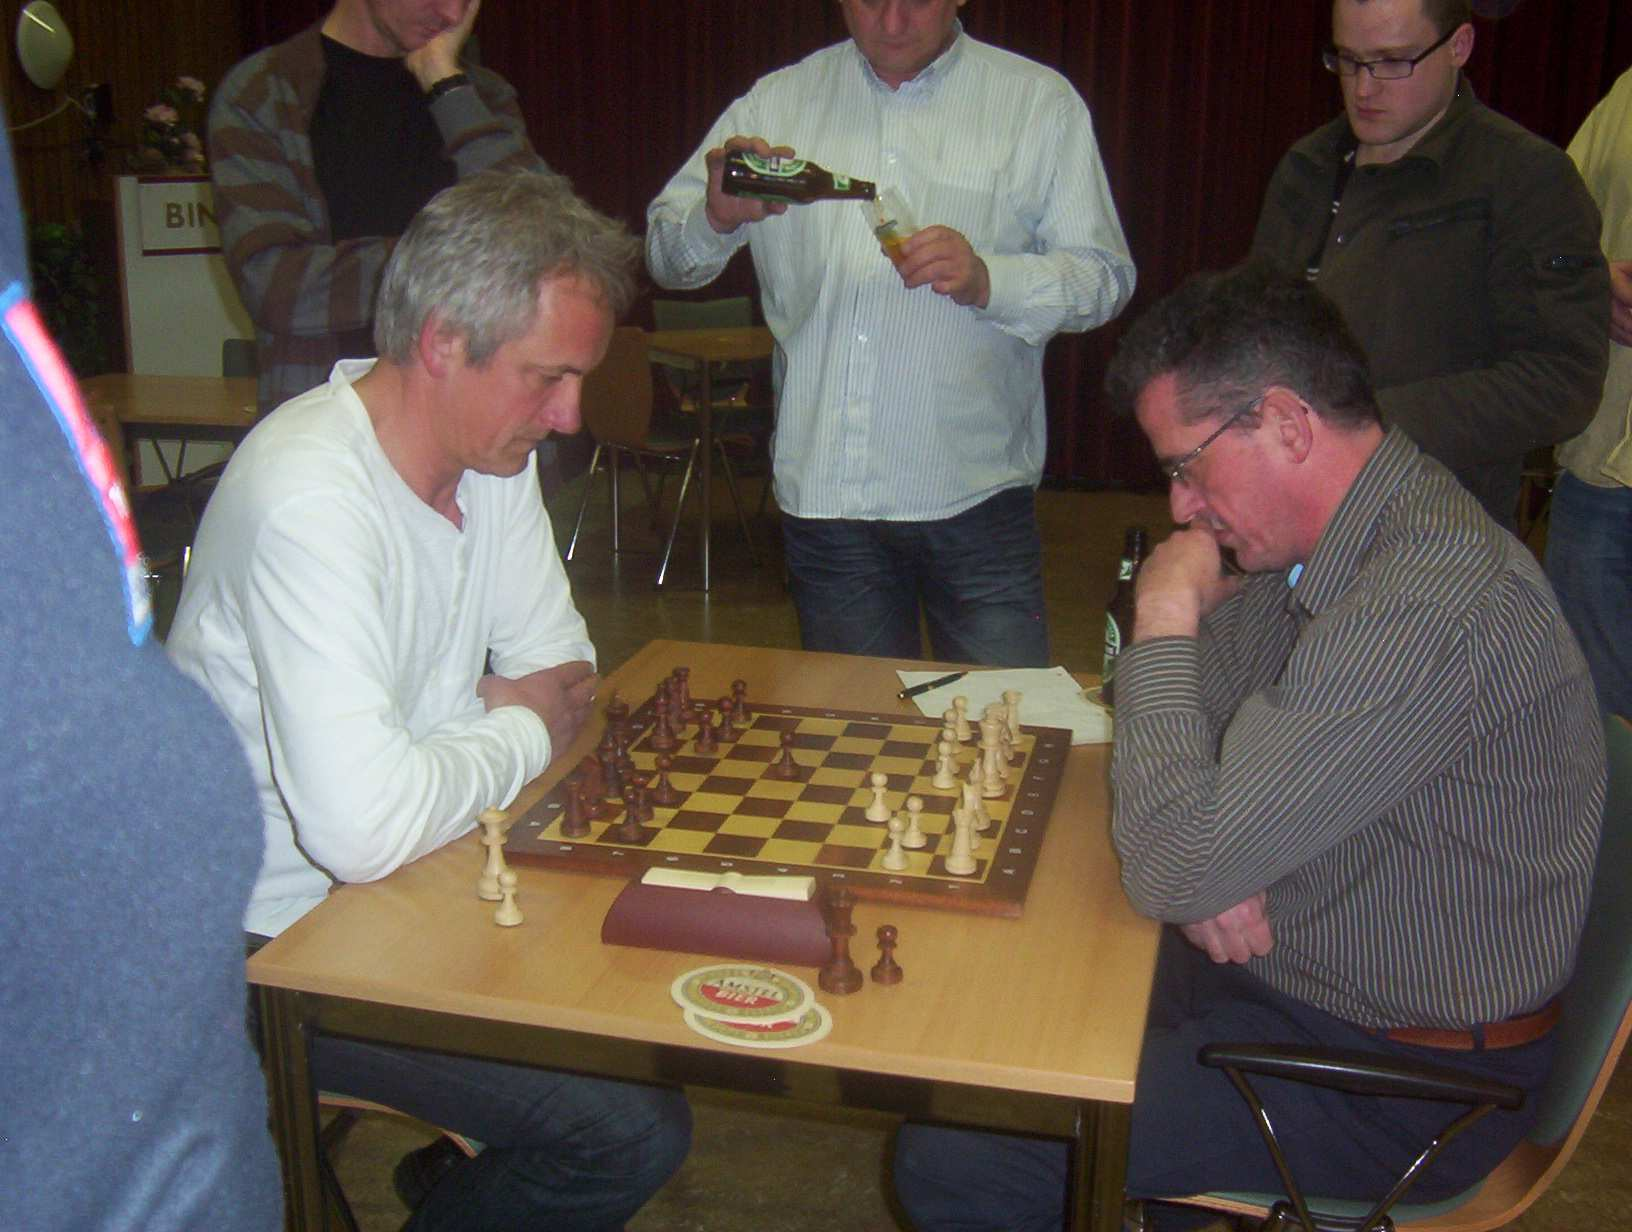 onderlinge partij remise overeen en wonnen hun overige partijen, waardoor zij met 9½ uit 10 bovenaan eindigden. Beide spelers plaatsten zich hierdoor voor de kruisfinales.